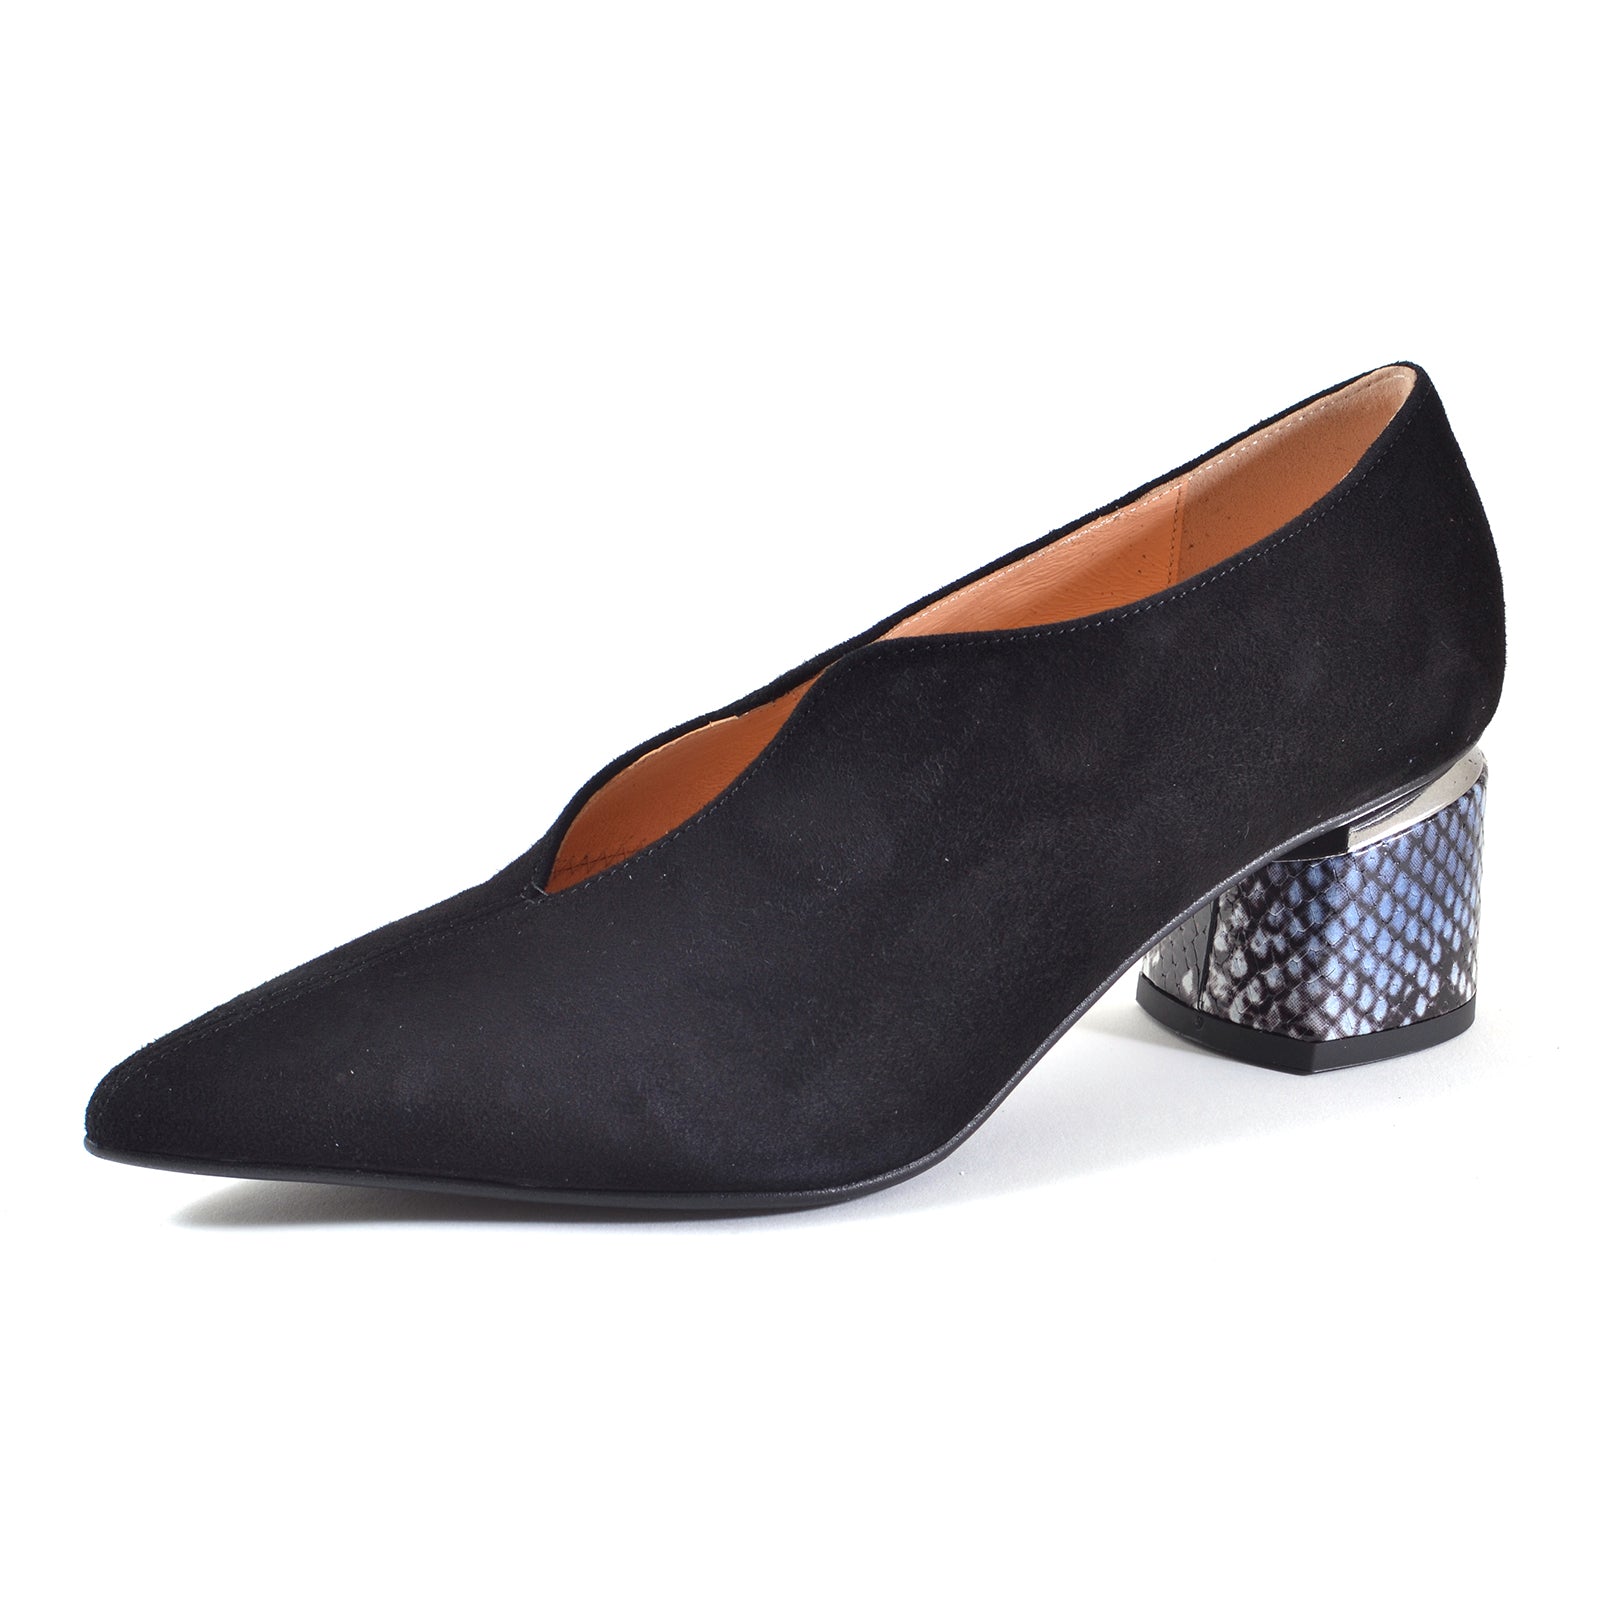 Pantofi Beatrixx 1436-01 Black